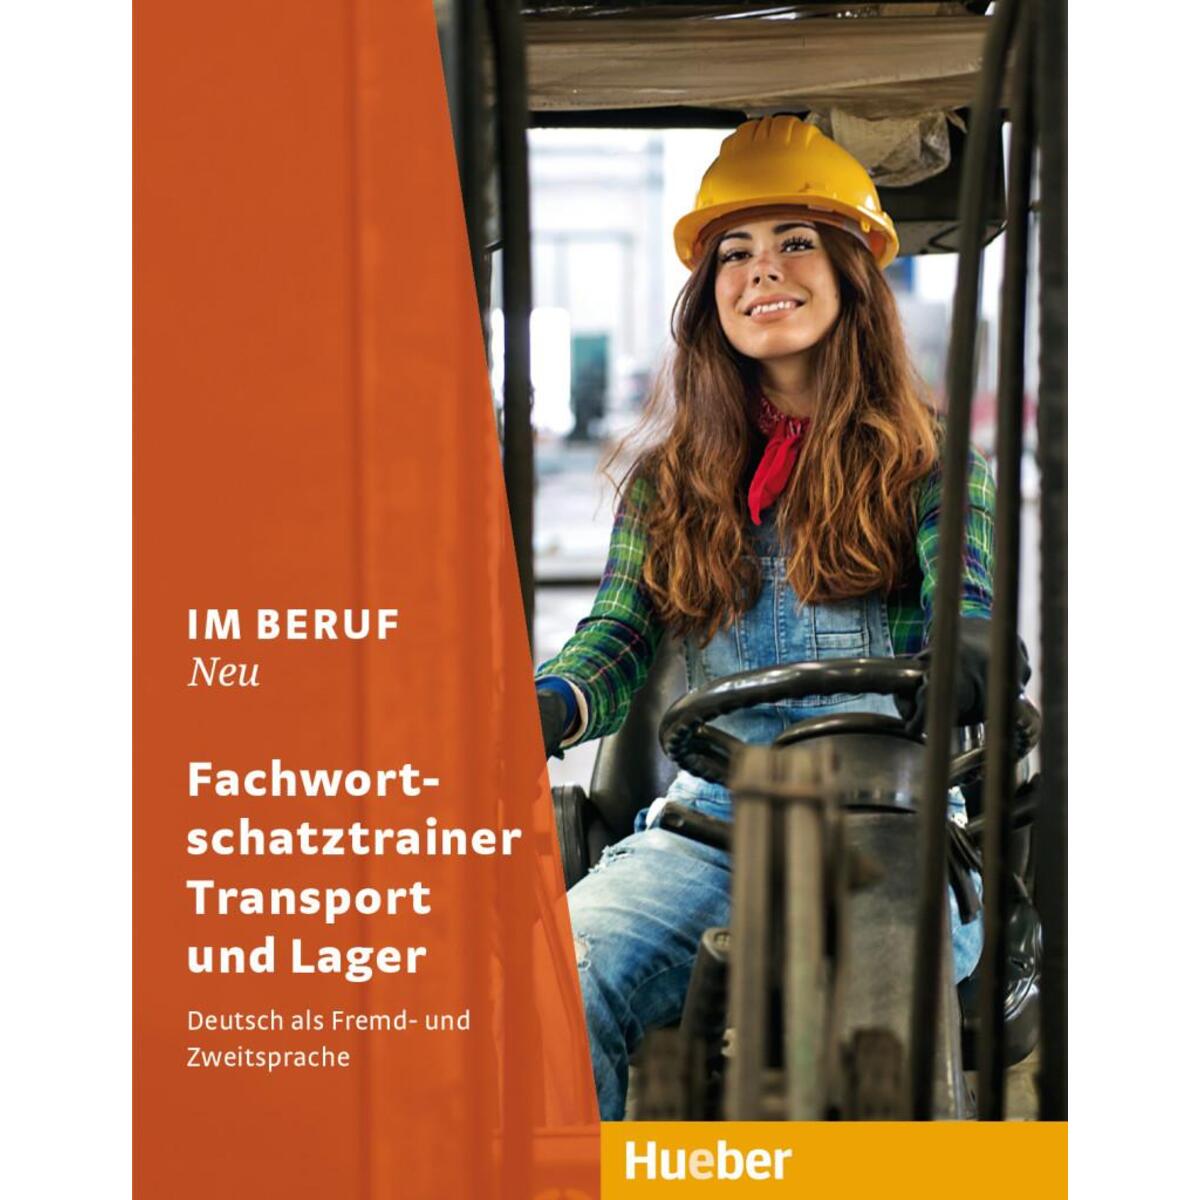 Im Beruf NEU. Fachwortschatztrainer Transport und Lager von Hueber Verlag GmbH